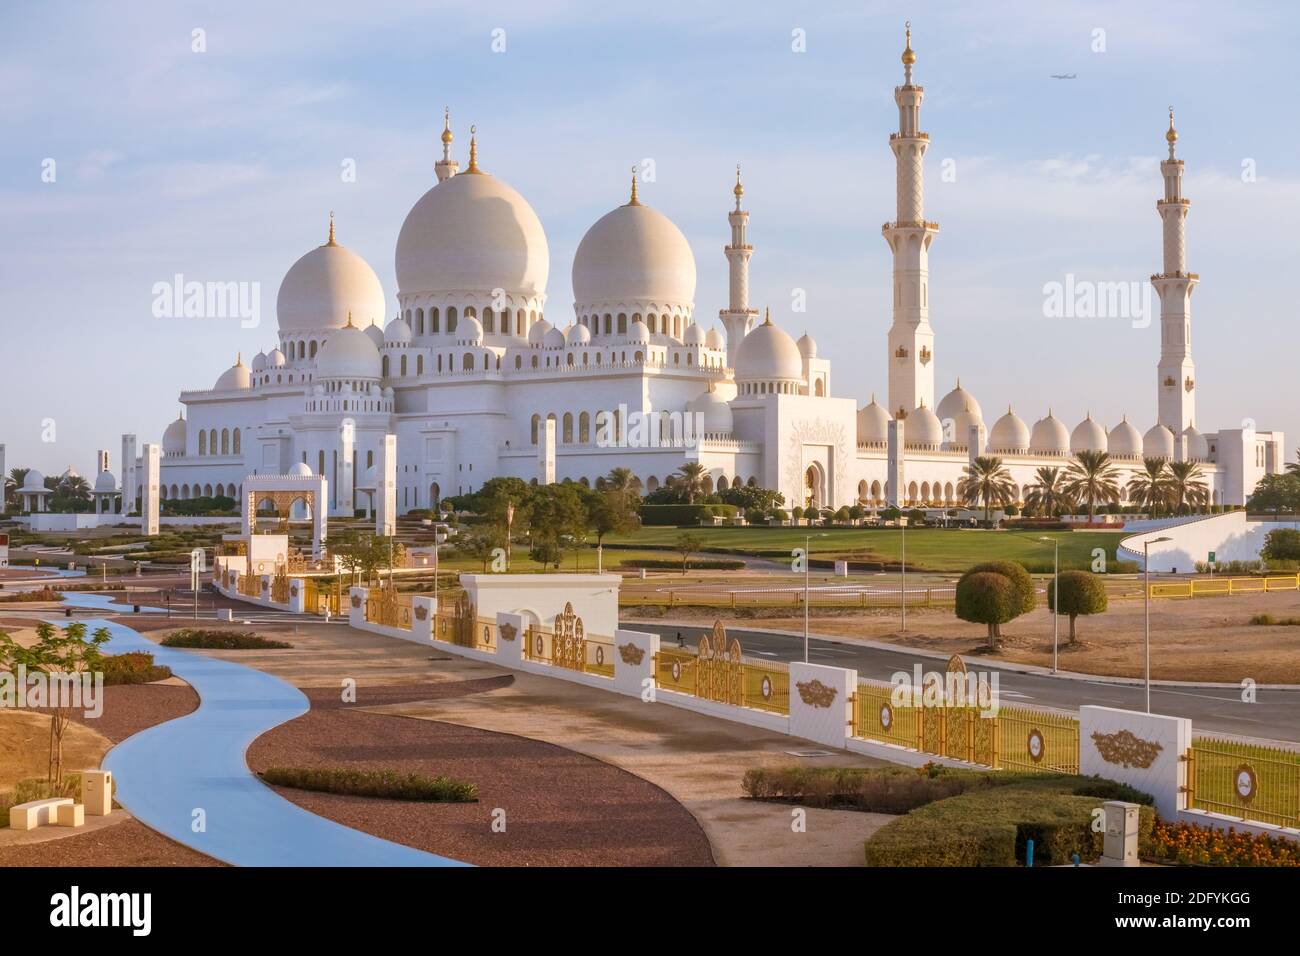 Abu Dhabi sheikh zayed grand mosque, United Arab Emirates Stock Photo